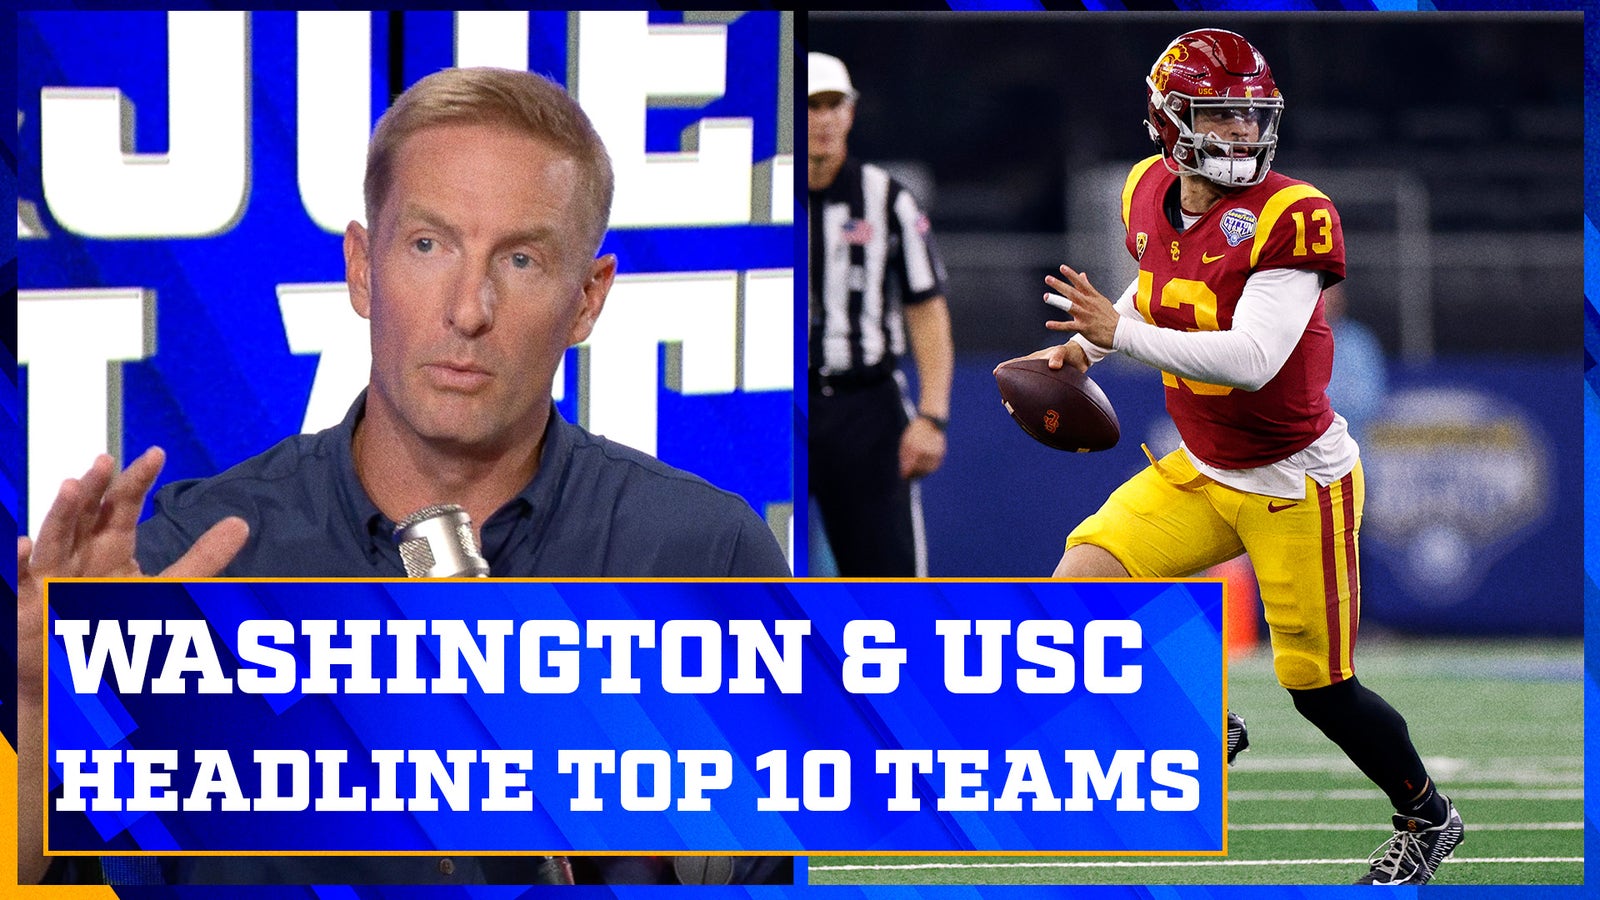 Washington, LSU & USC headline Joel Klatt's Top 10 preseason teams